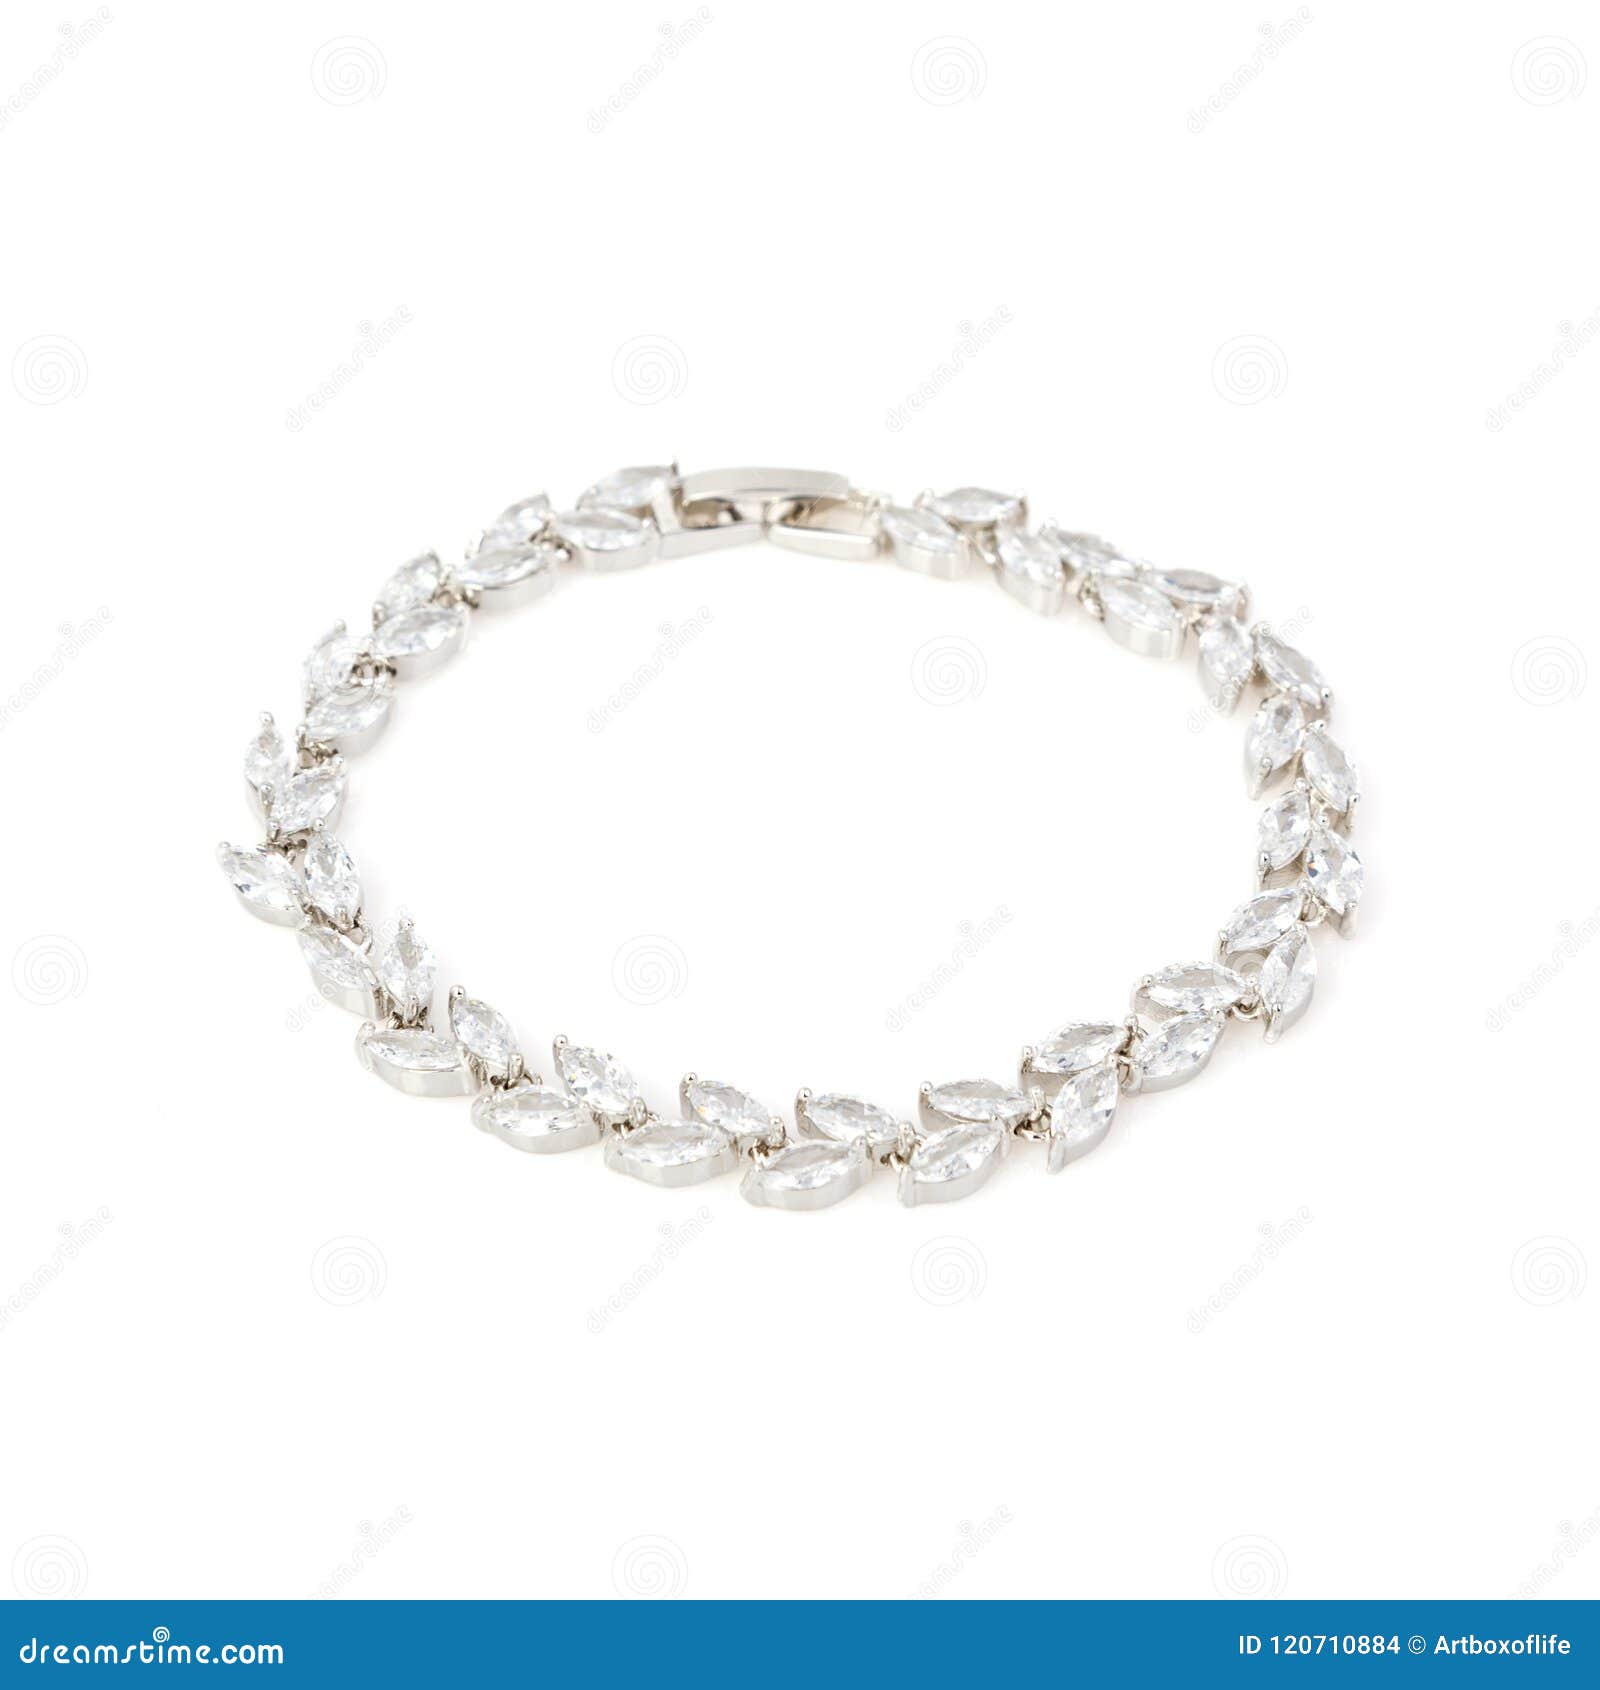 silver diamond bracelet on white